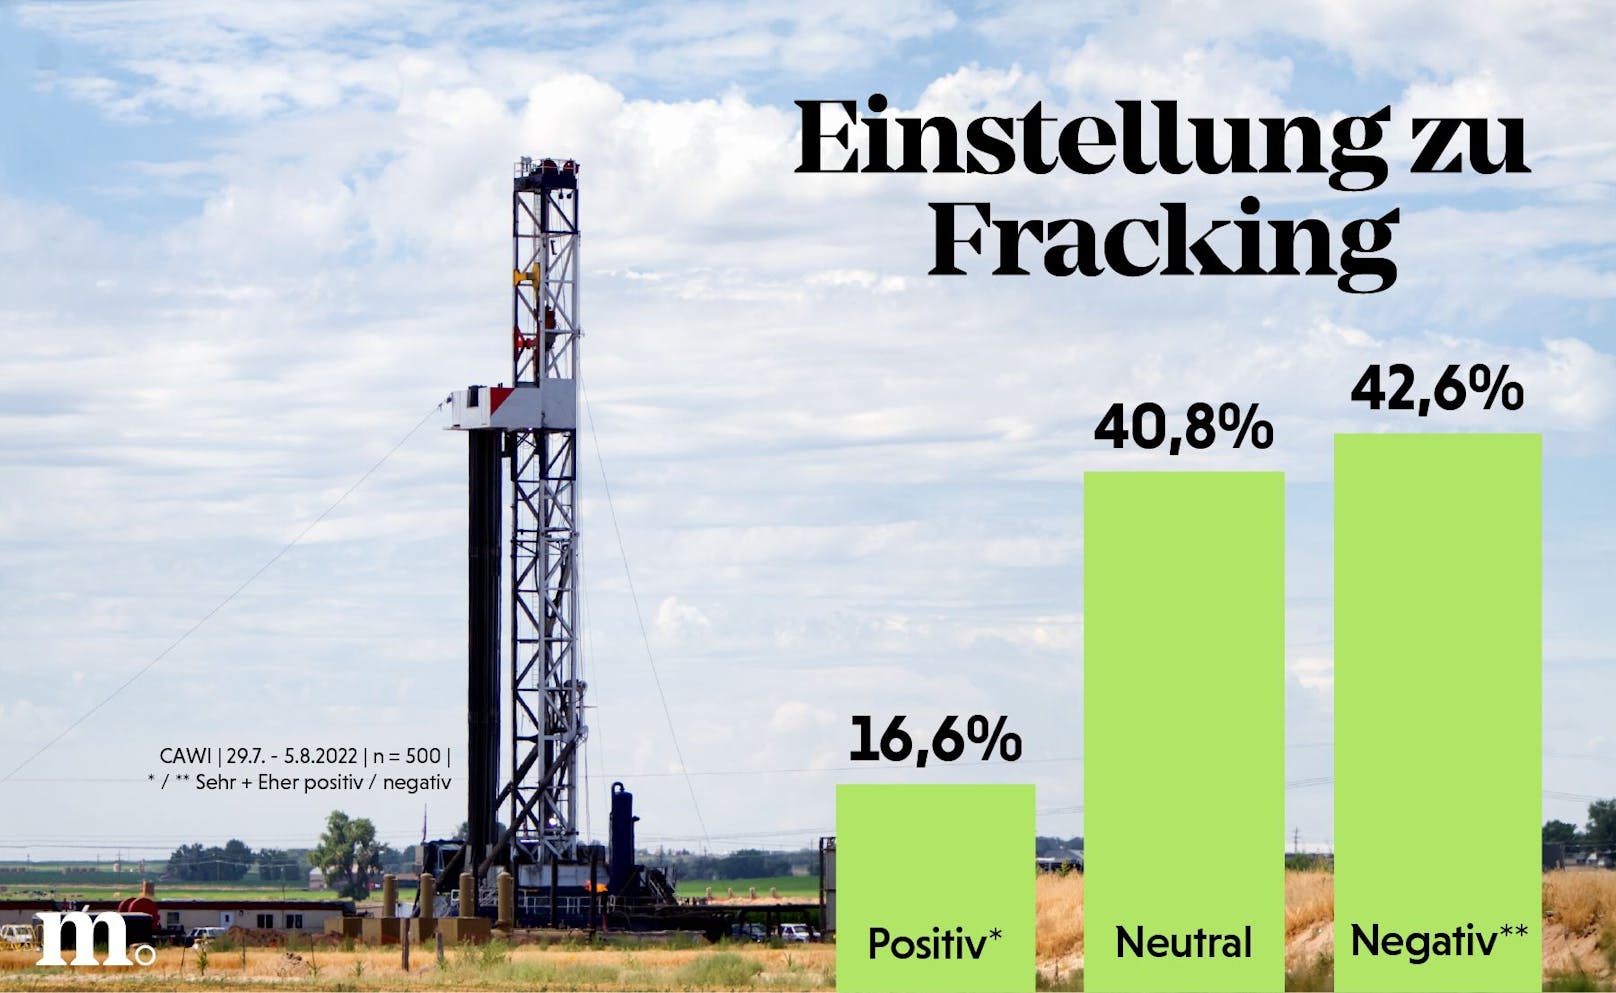 <strong>Fracking</strong> ist in Österreich laut Marketagent-Umfrage vom August 2022 <strong>nicht gerne gesehen</strong>. Nur ein Bruchteil der Befragten waren der Methode gegenüber positiv eingestellt.